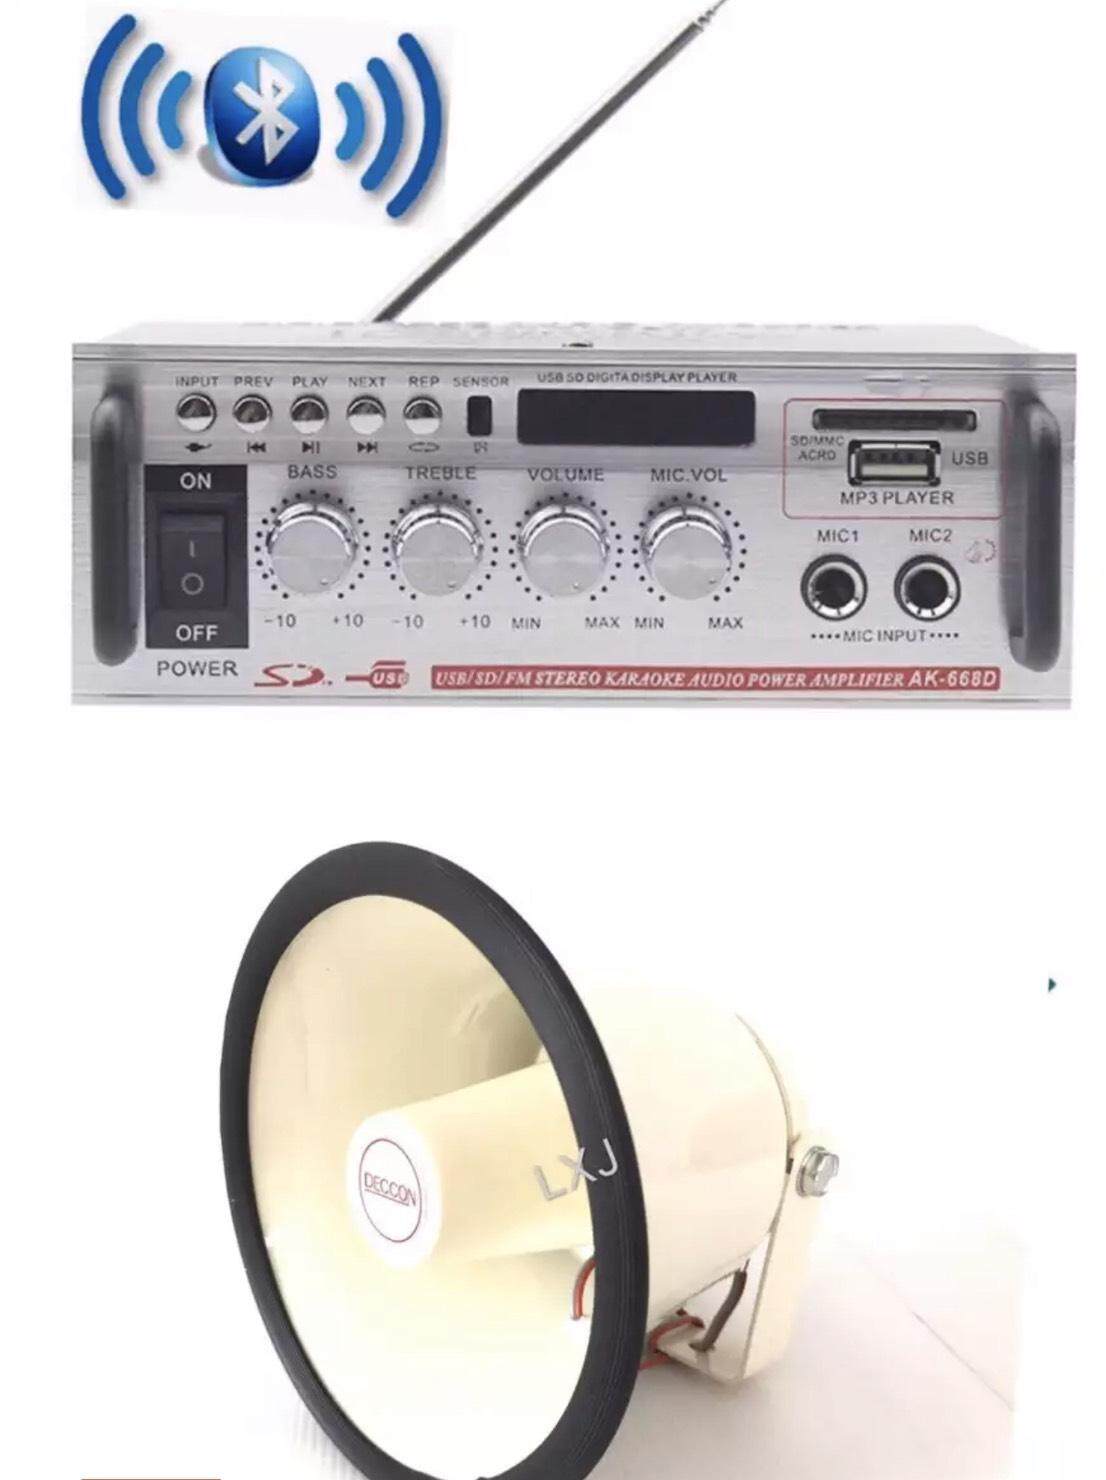 ชุดเครื่องเสียงรถโฆษณา (เครื่องขยายSN- 808AC มีBluetooth USB MP3 /SD CARD 1 ตัว + HS-615Wลำโพงฮอร์น 1 ตัว)